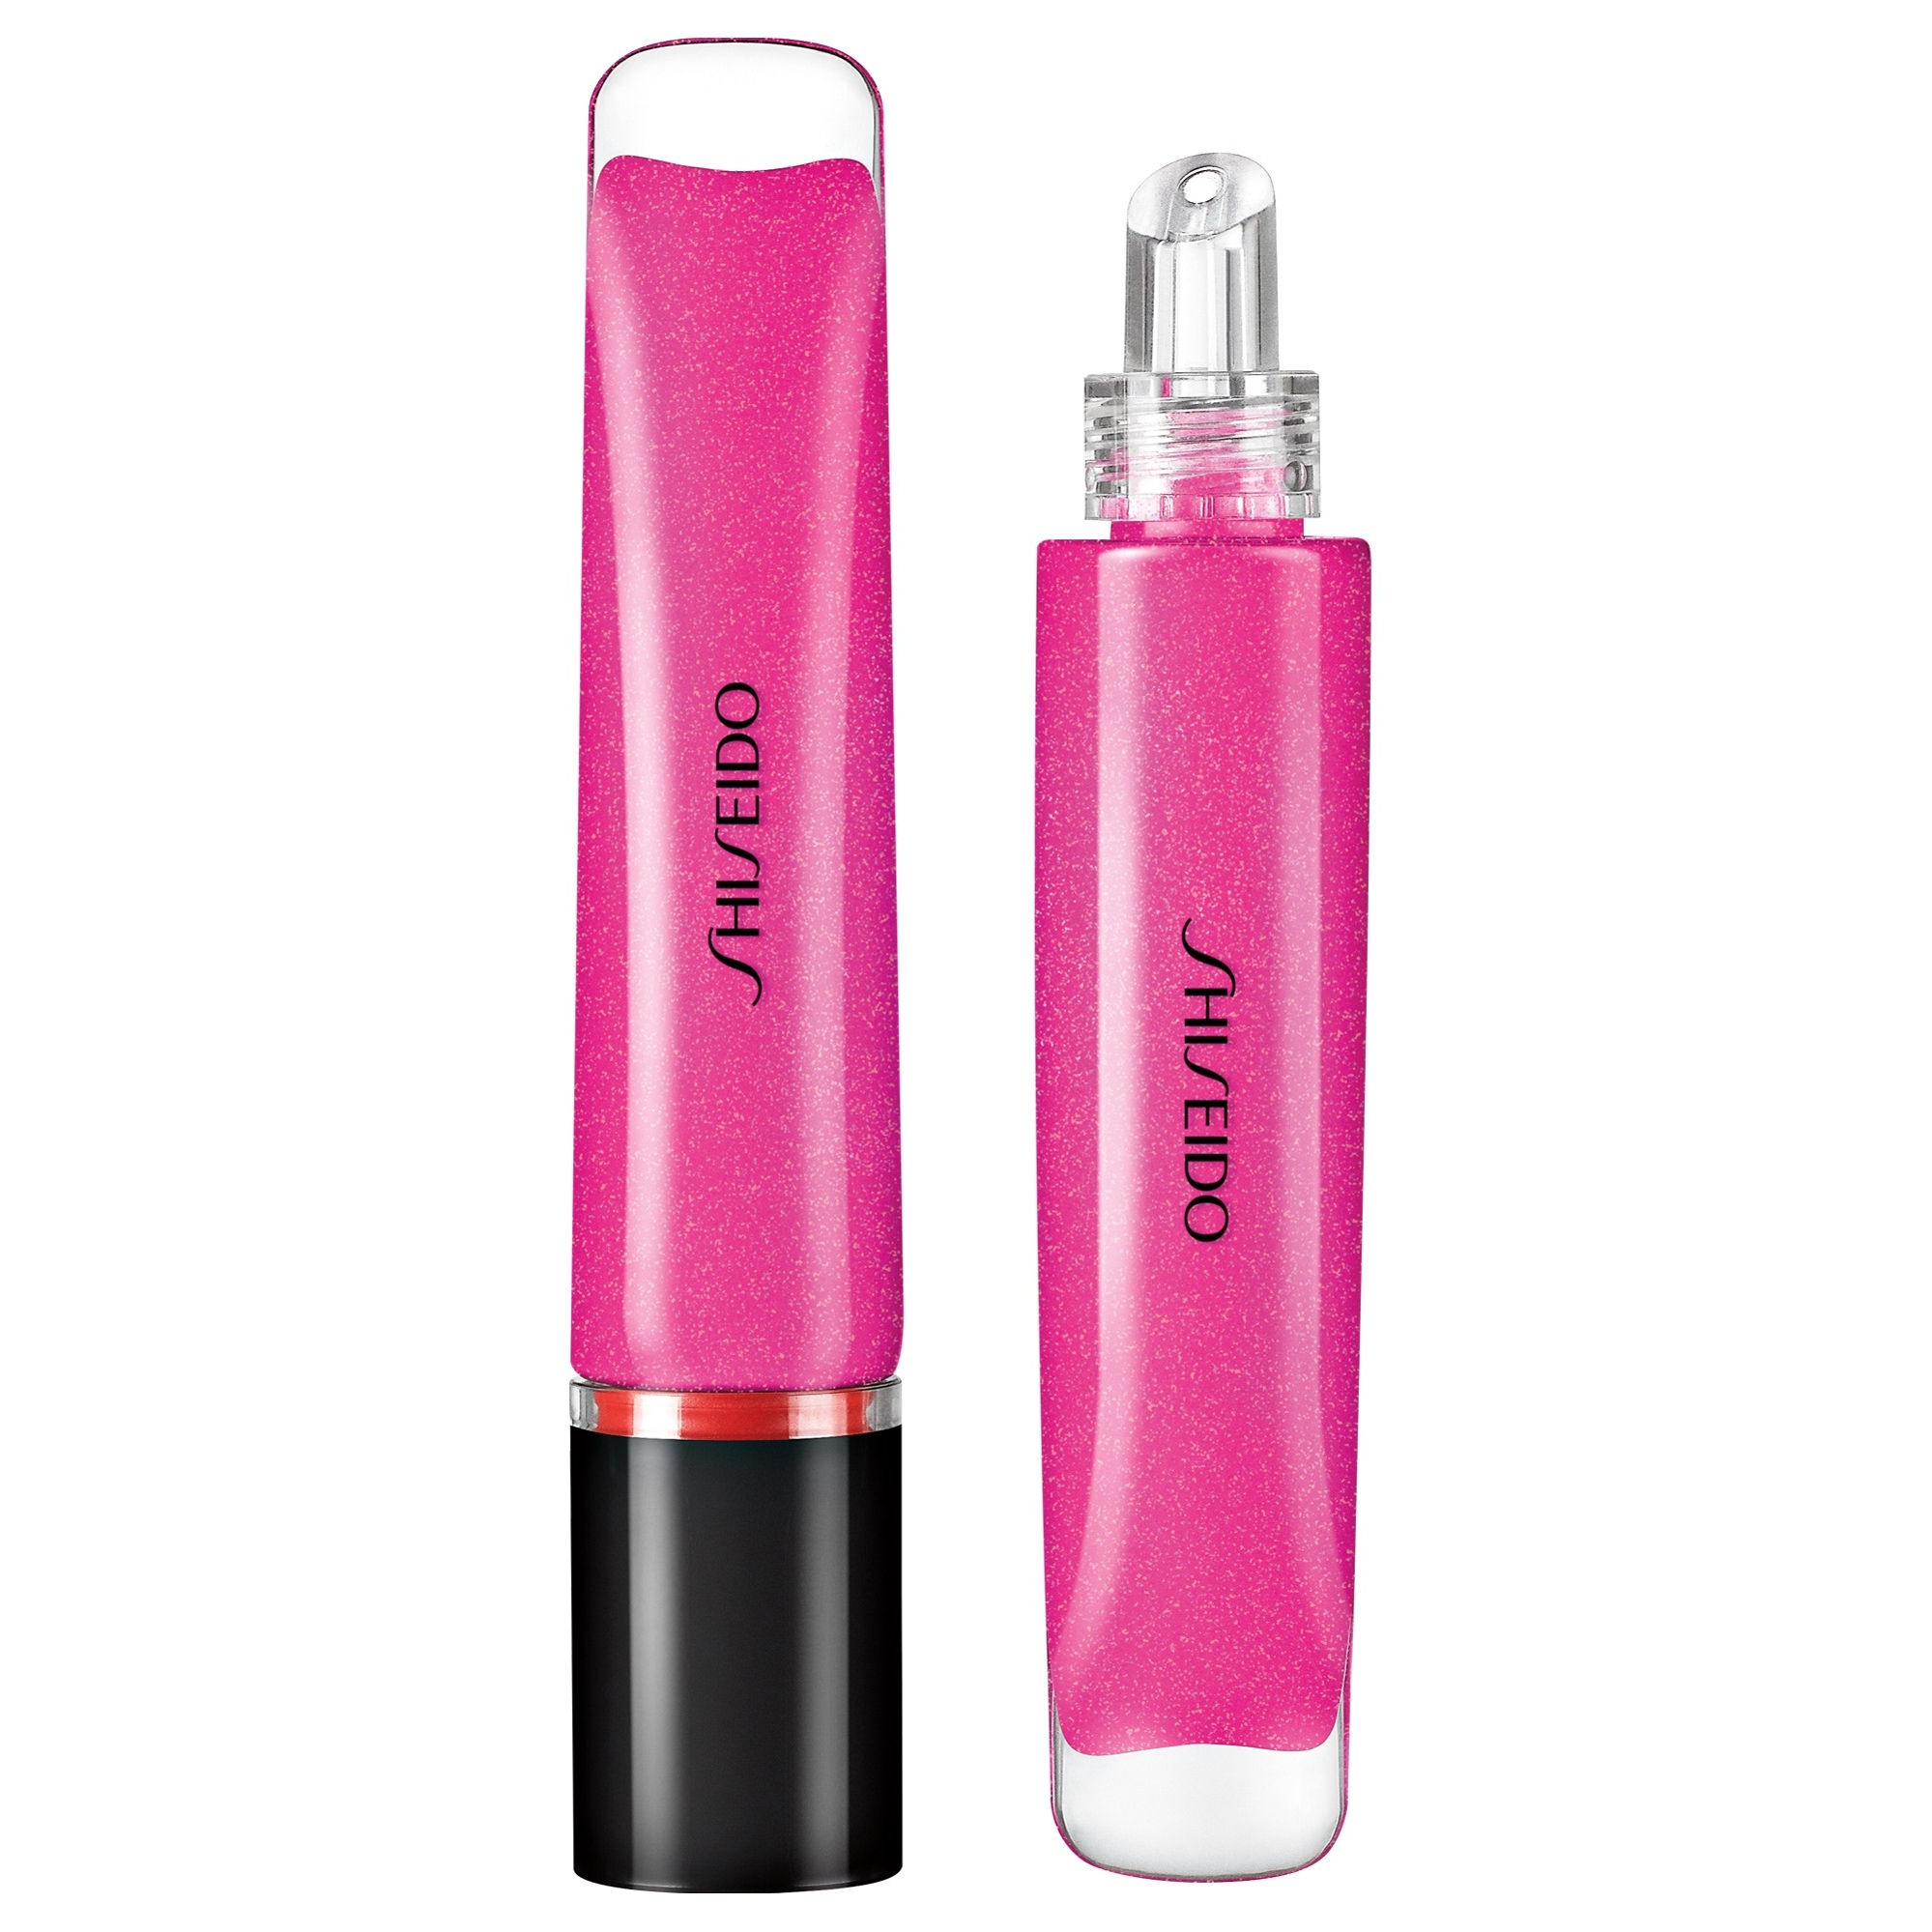 shiseido-shimmer-gel-gloss-lipgloss-9-ml-6